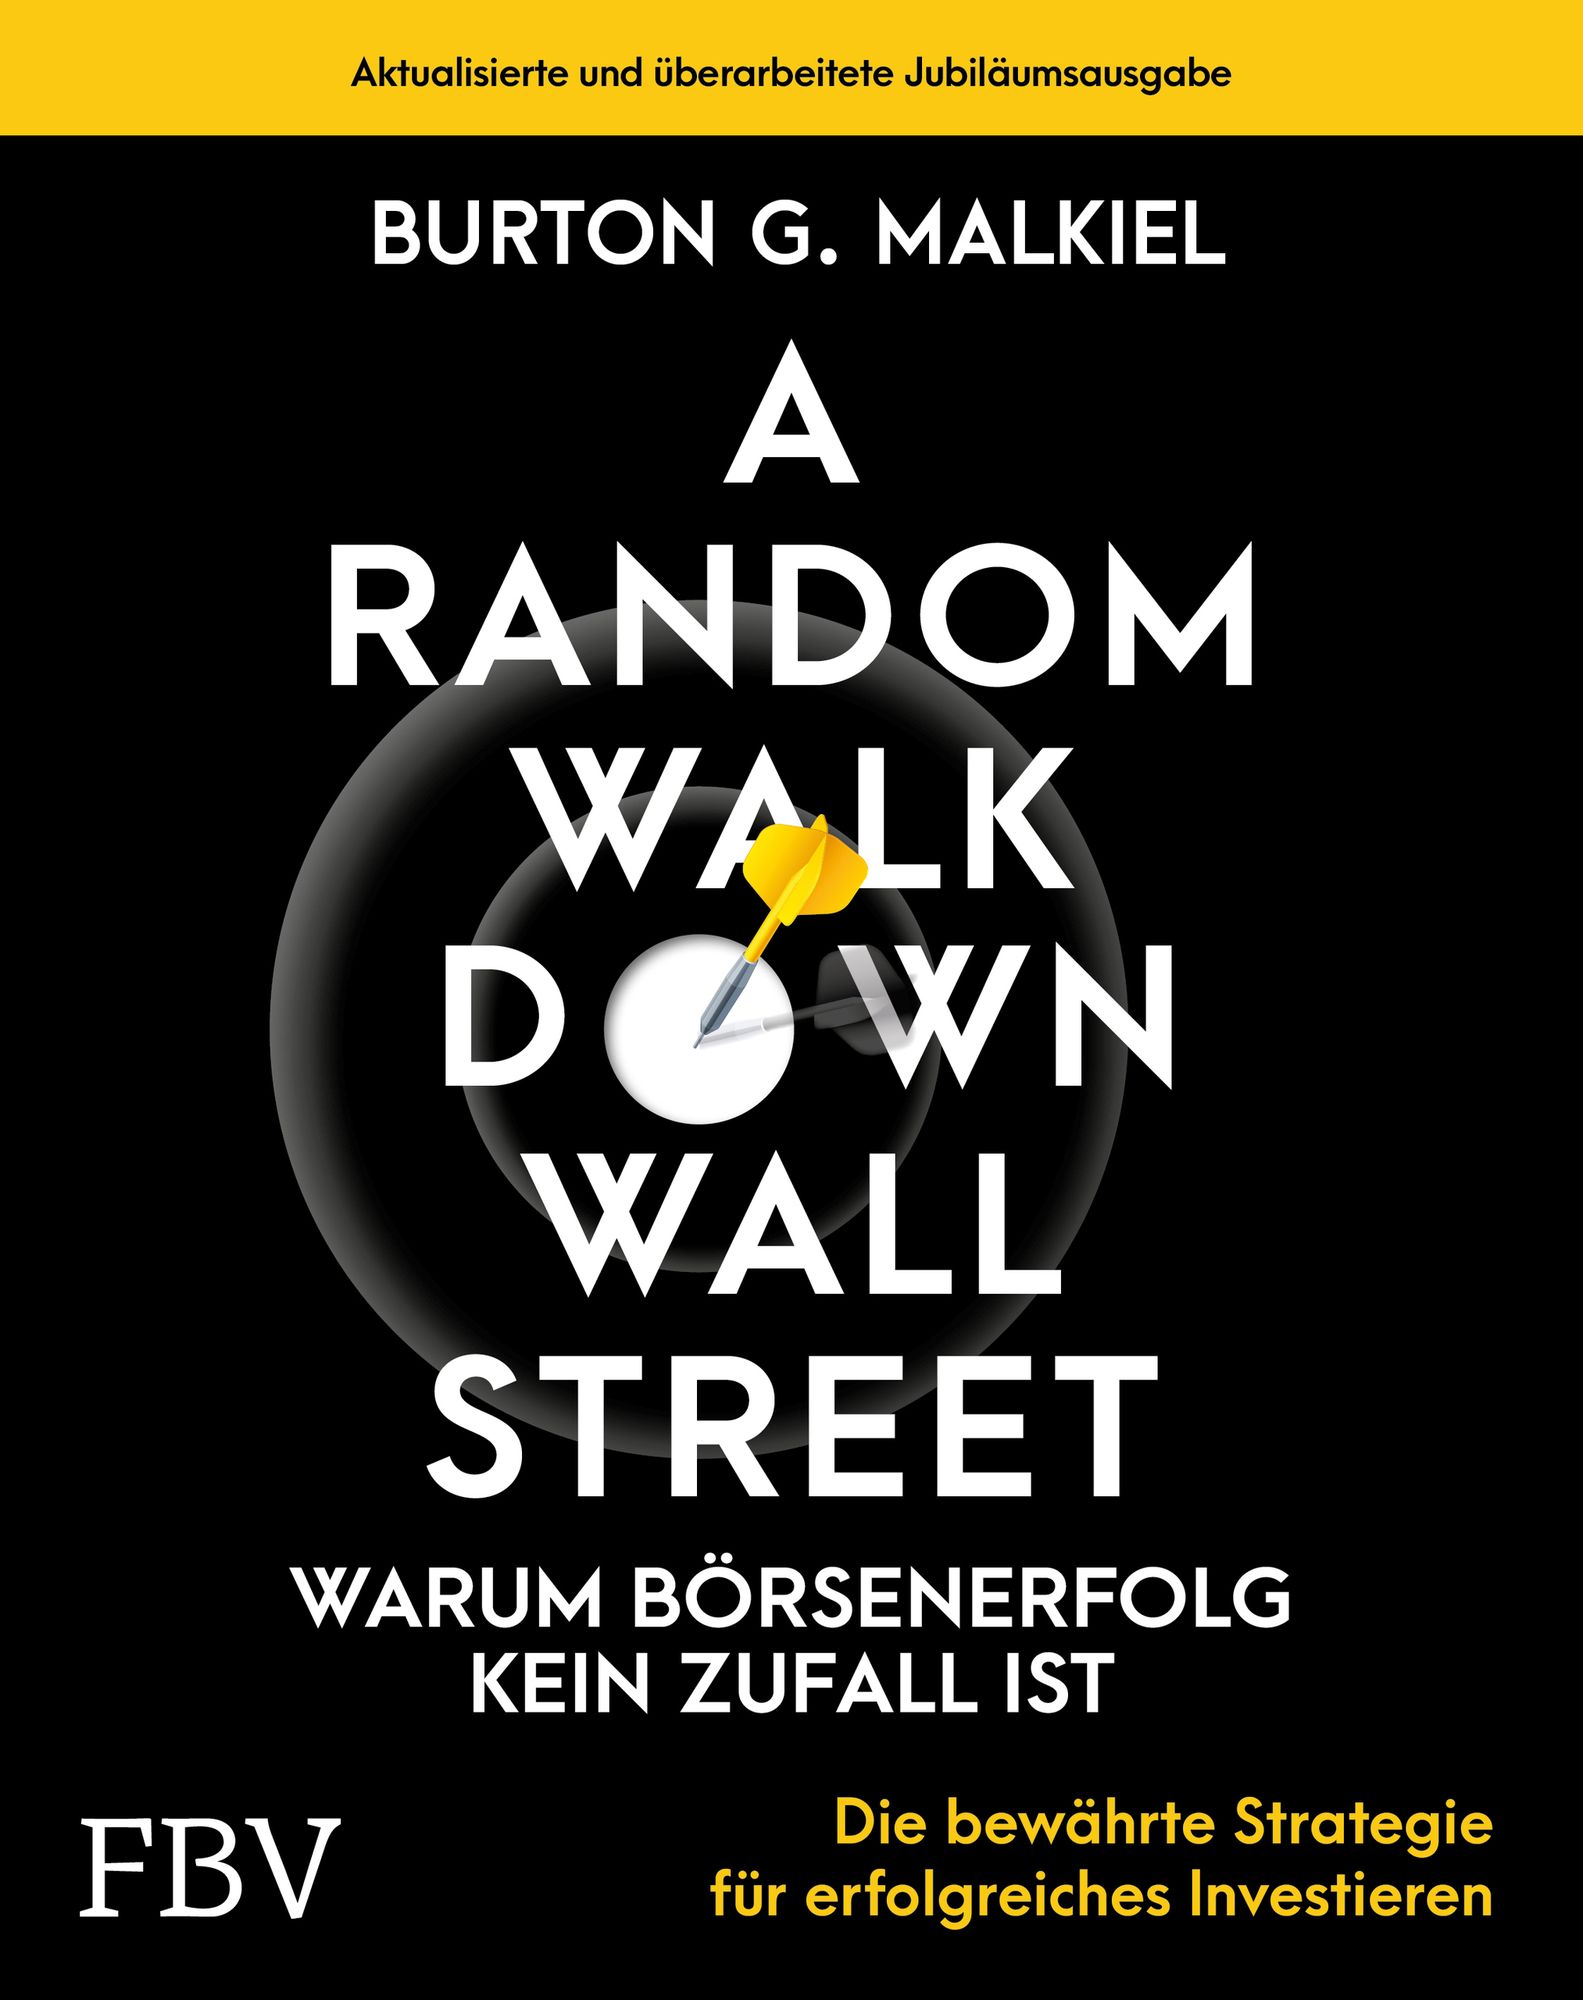 Burton Malkiel - Paseo Aleatorio Por Wall Street PDF